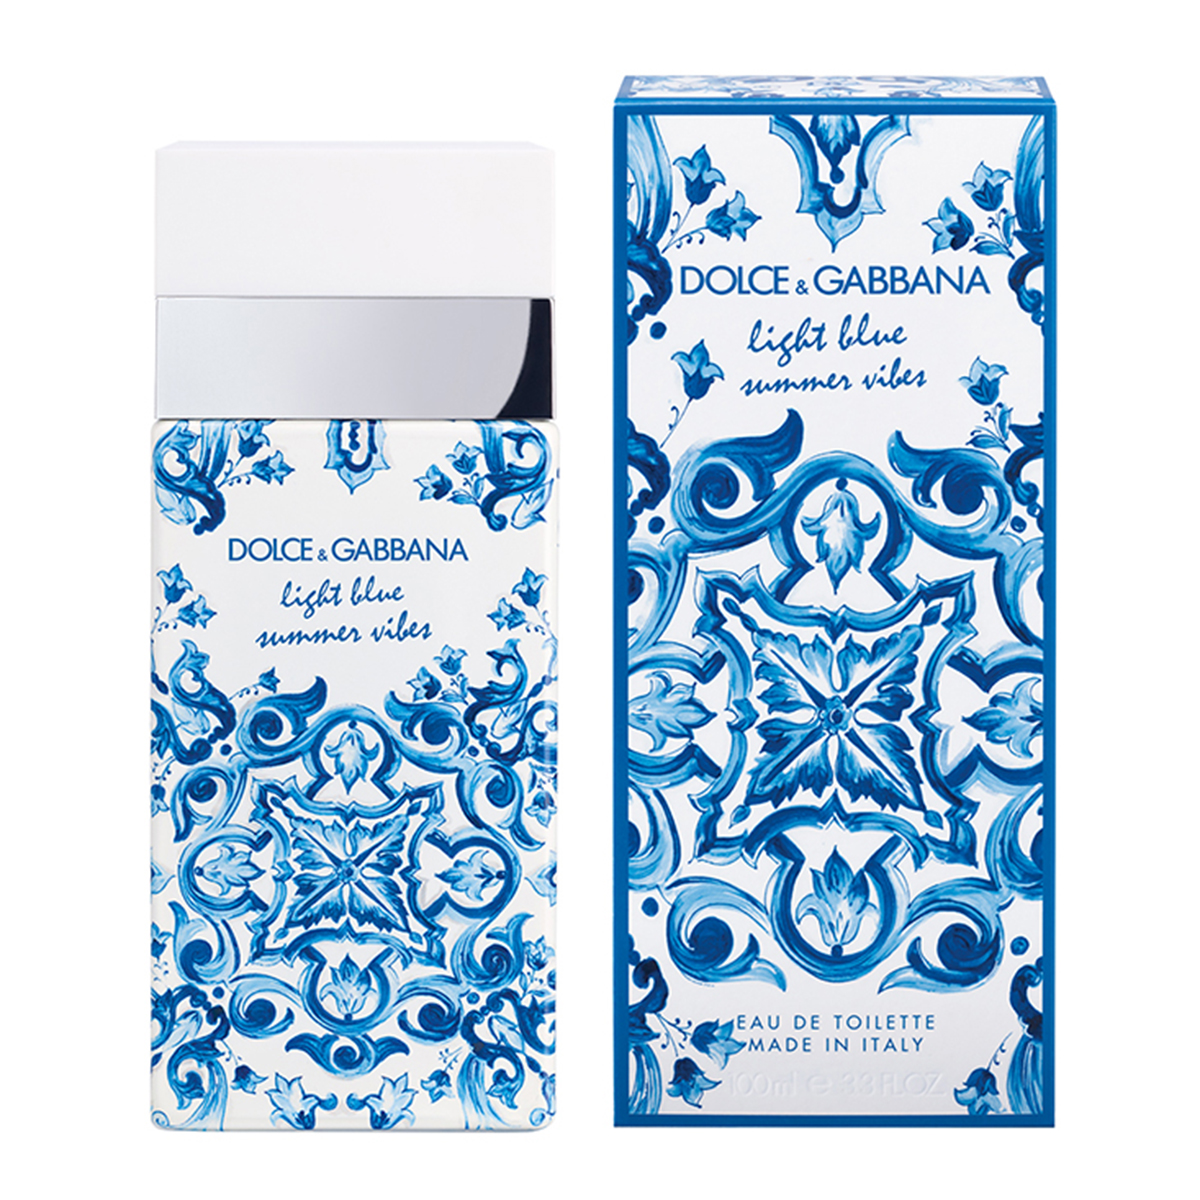 Dolce&Gabbana Light Blue Summer Vibes Eau De Toilette - 3.3oz.